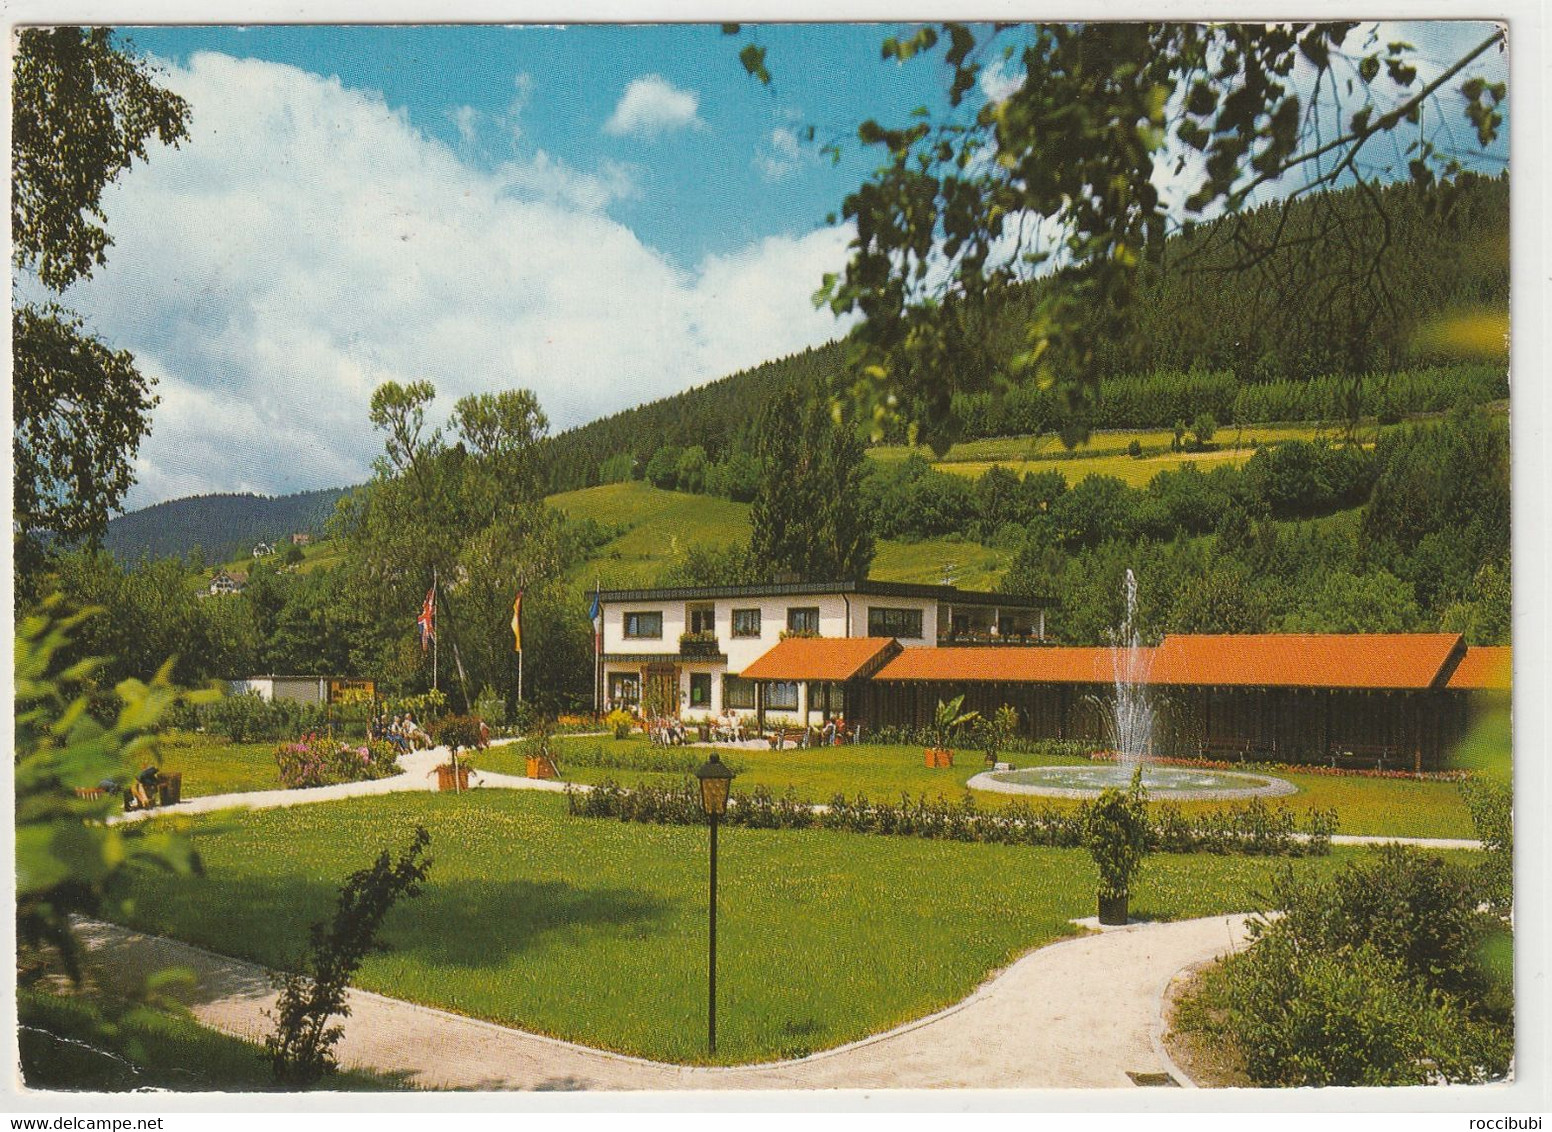 Baiersbronn, Baden-Württemberg - Baiersbronn